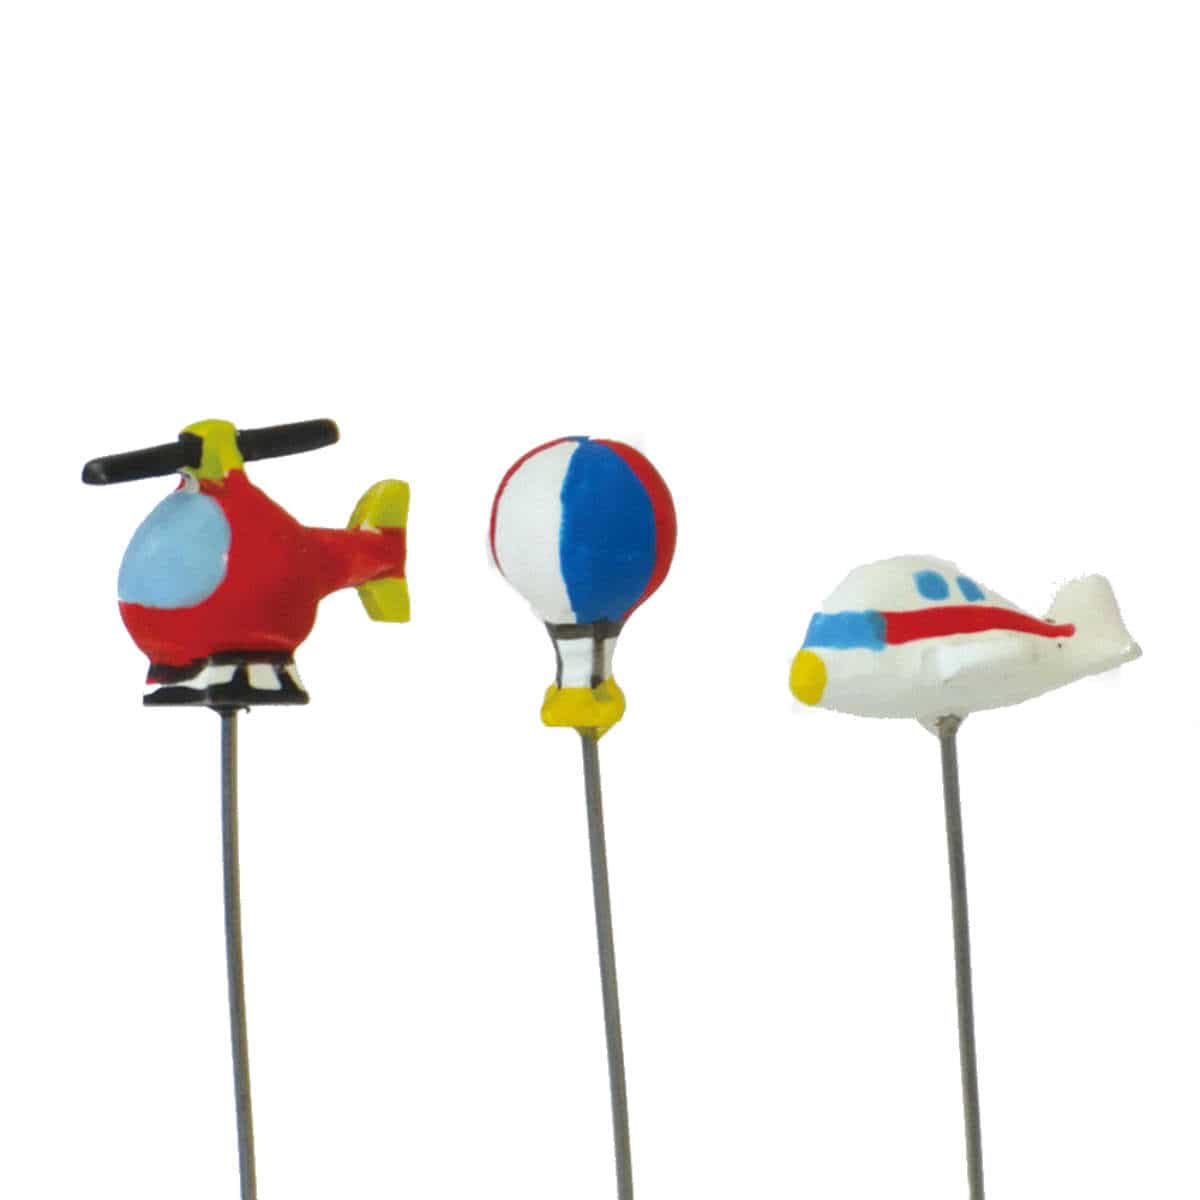 ガーデンピック ミニピック ヘリコプター 気球 飛行機 3種セット